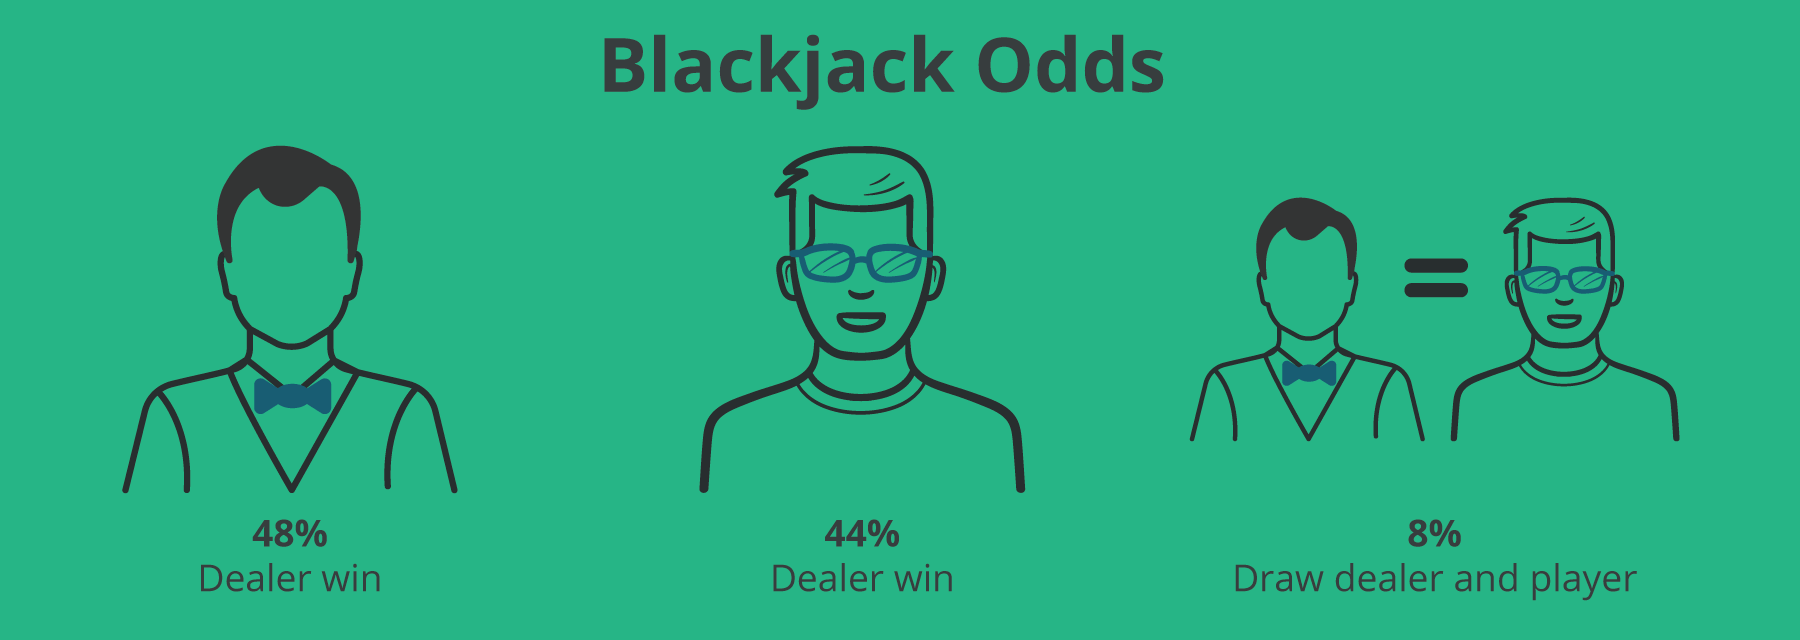 Blackjack Odds - Emirates Casino Blackjack Guide